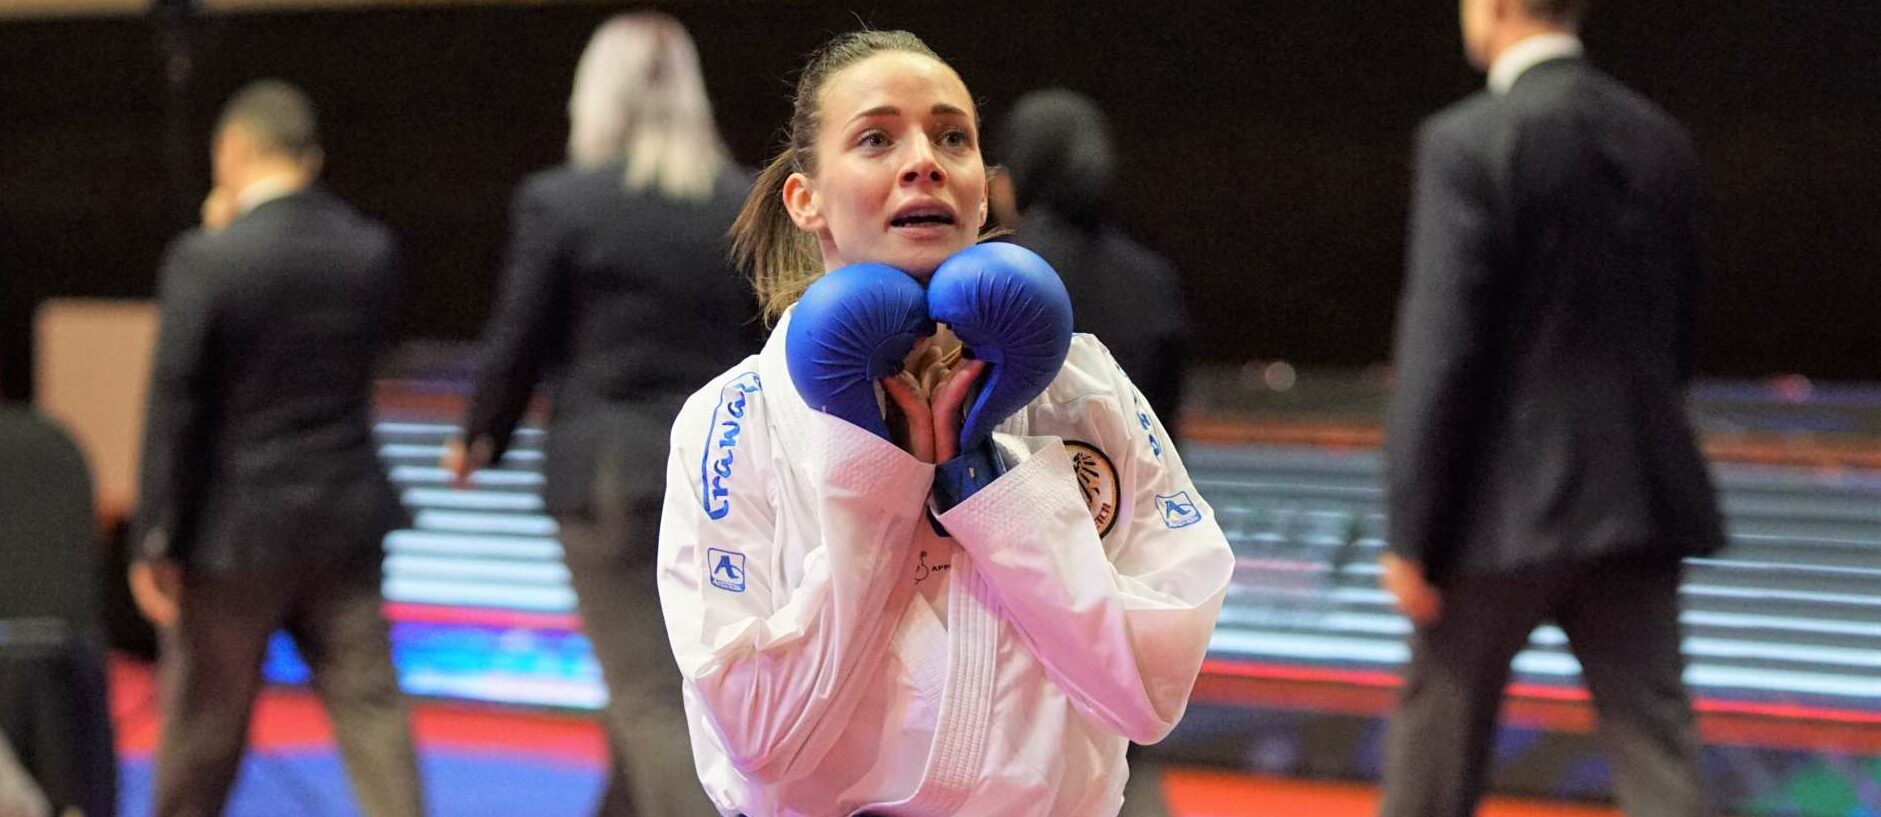 Riesige Erleichterung: Nach einer verkorksten Saison darf Bettina Plank doch beim vielleicht einzigen Karate-Olympia-Event dabei sein. 2024 ist die Sportart schon wieder nicht mehr im Programm.